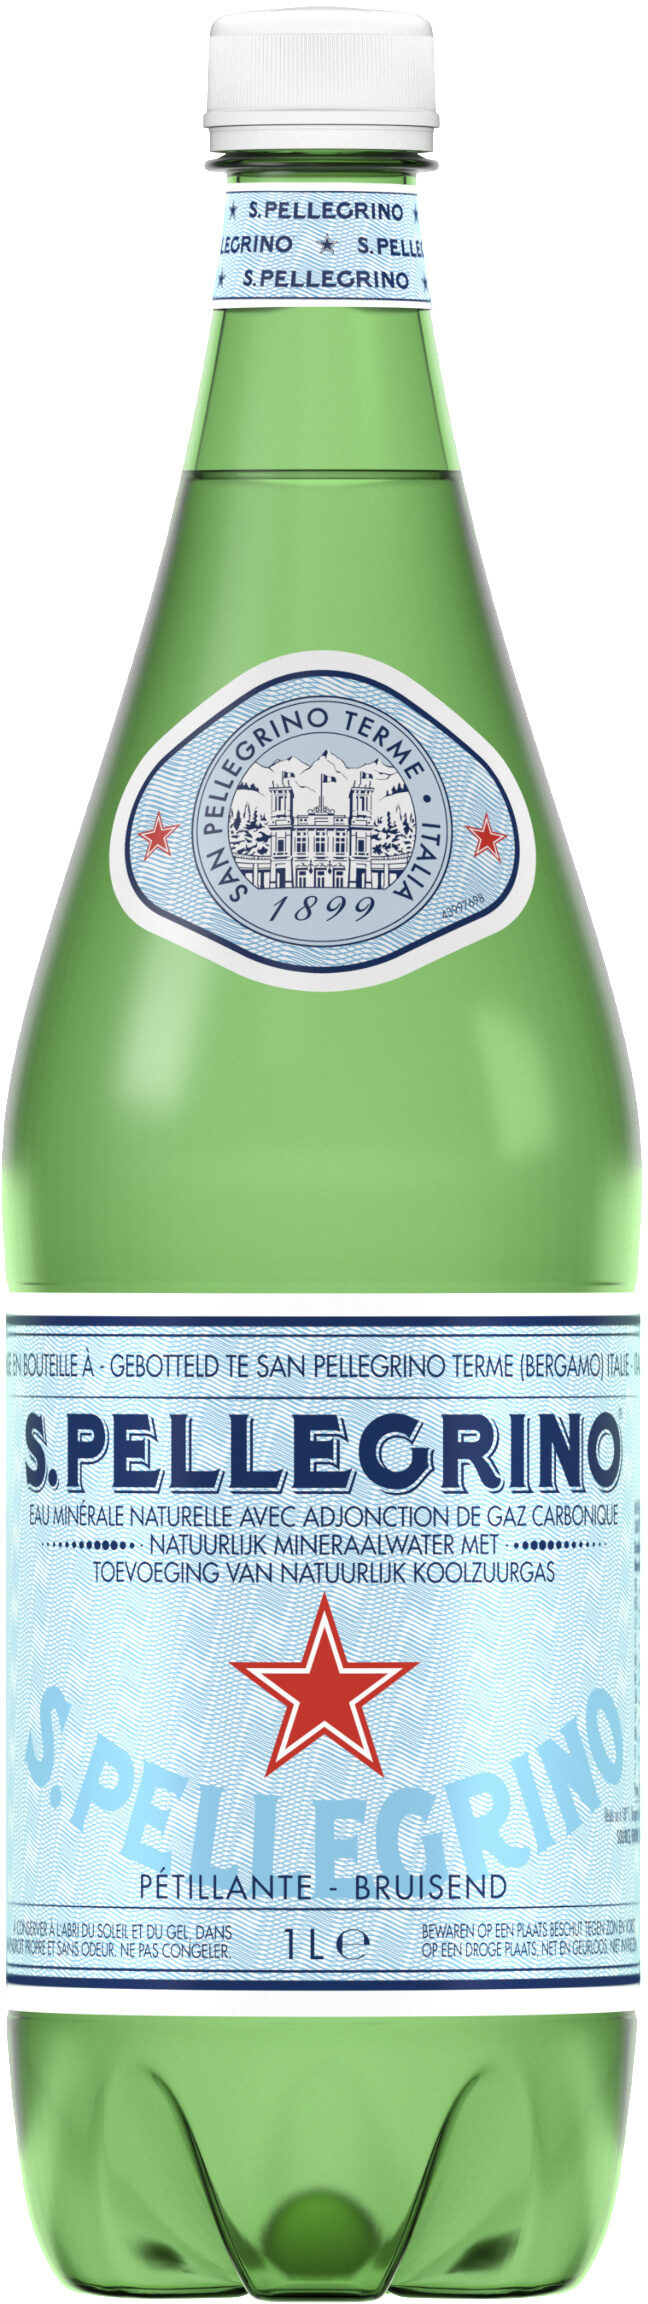 S. Pellegrino Water - 製品 - en